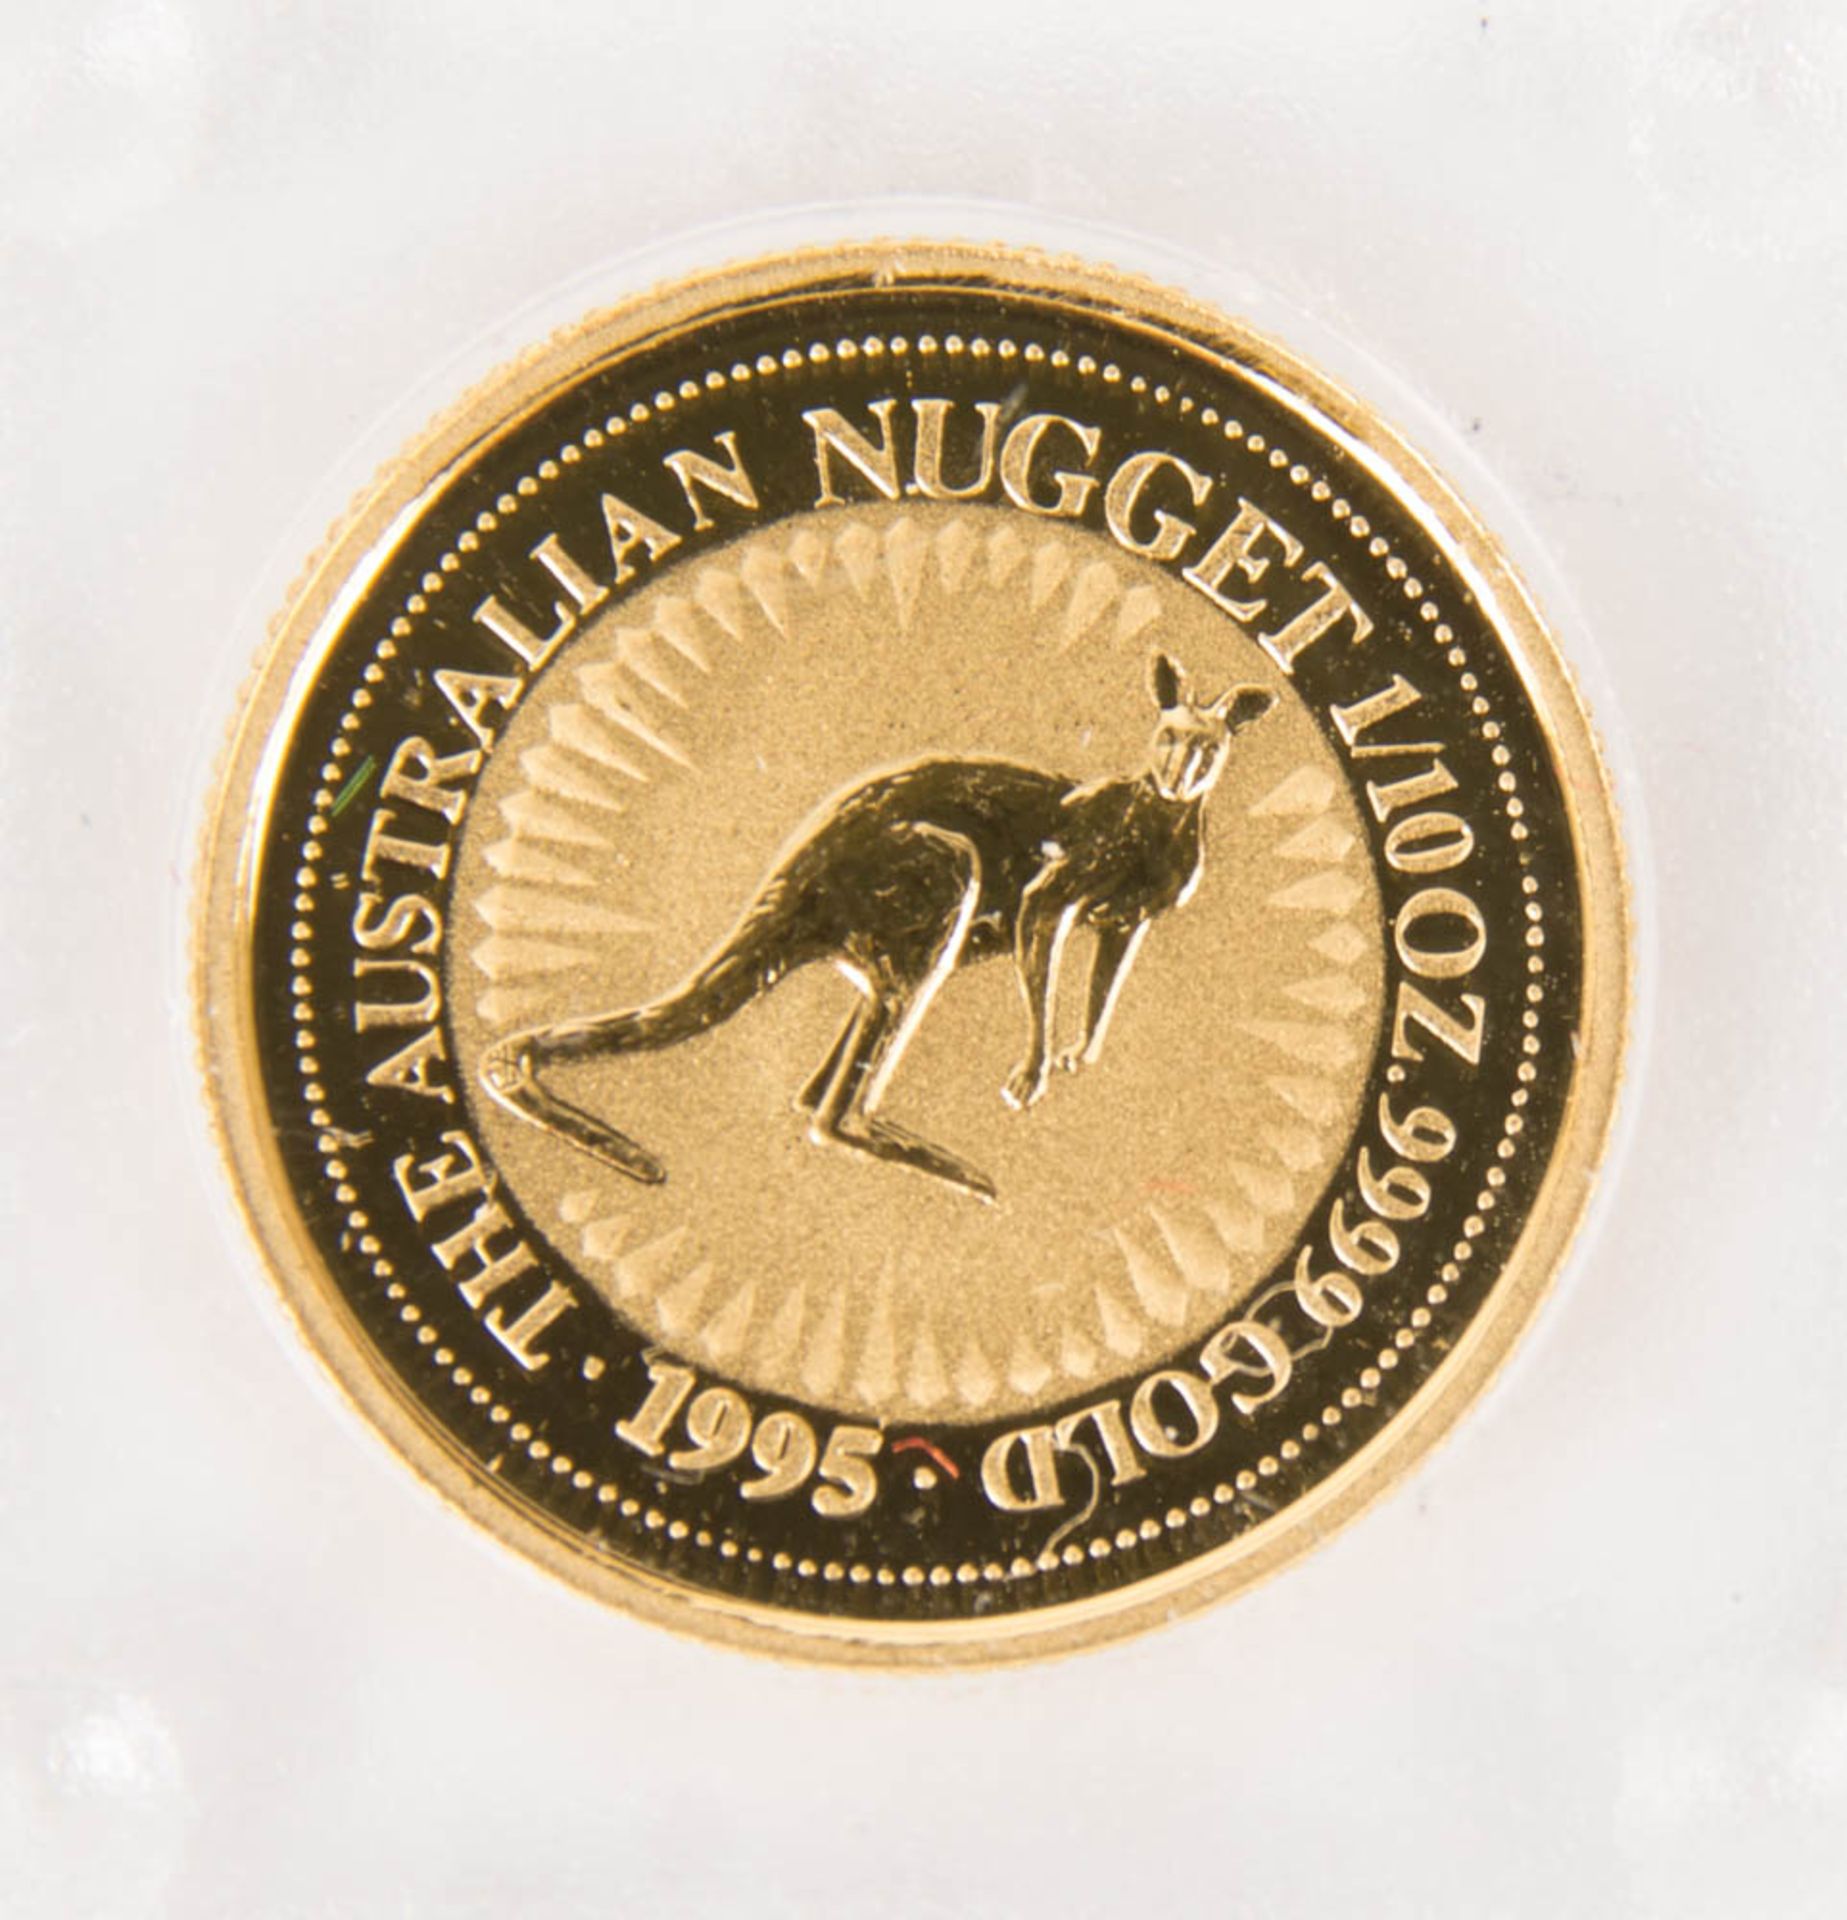 Australien: 15 Dollars Gold 1995 1/10oz.